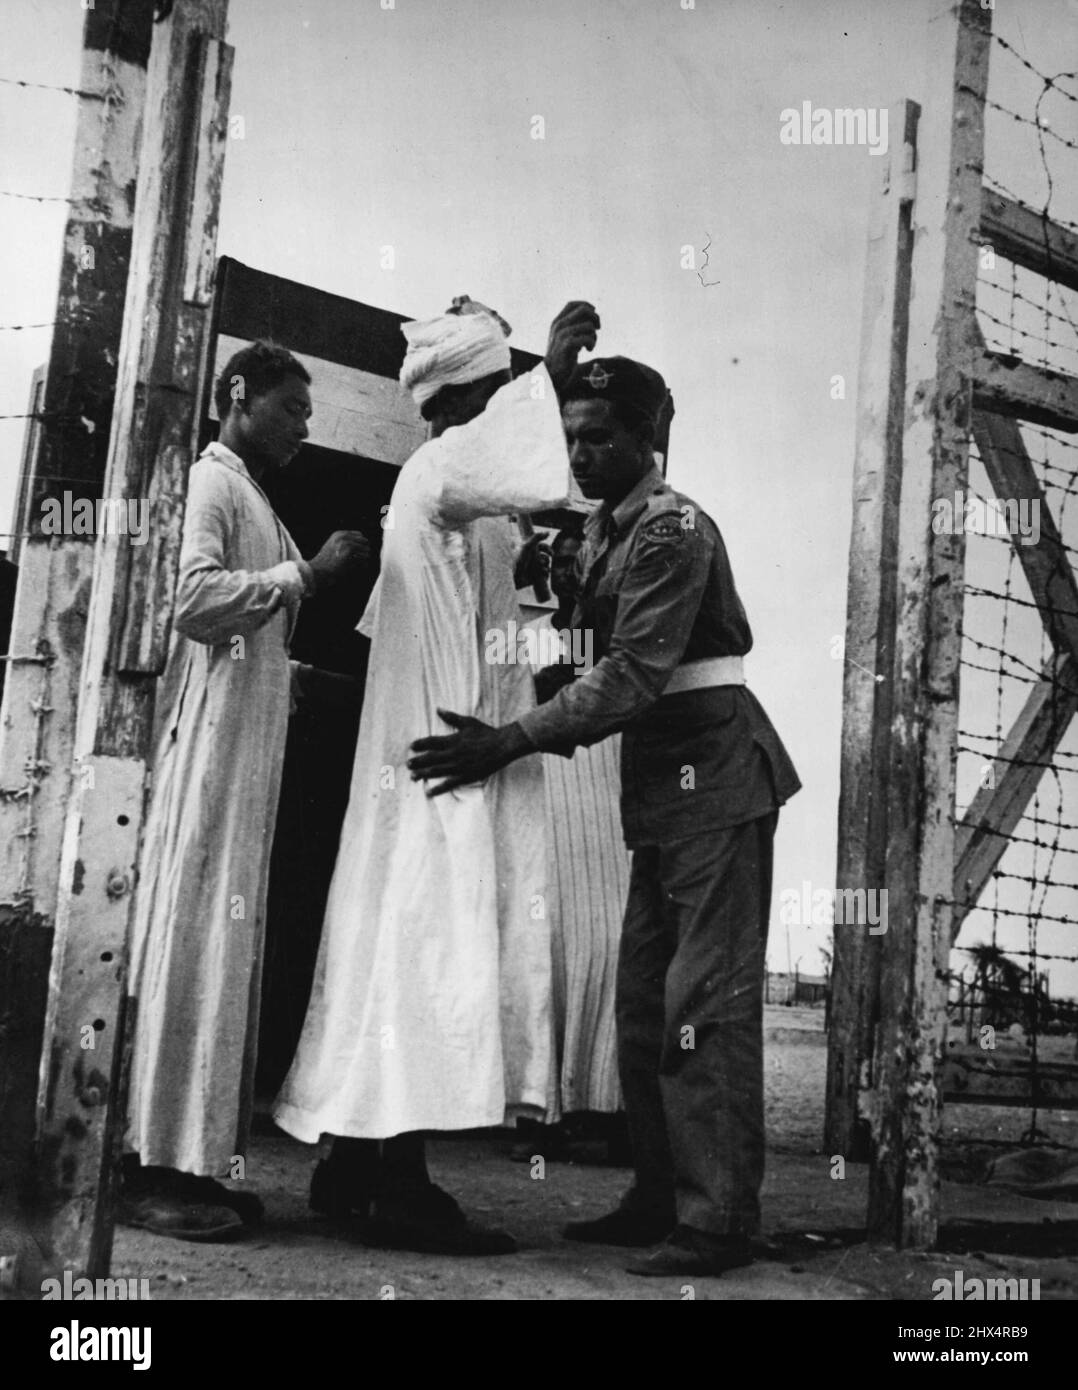 Fayid Camp: Roccaforte britannica nella zona del canale di Suez -- tutti gli Egiziani che entrano o escono sono scampati per le armi nascoste. Il filo spinato protegge la recinzione e i cancelli. Novembre 27, 1951. (Foto con fotocamera premere). Foto Stock